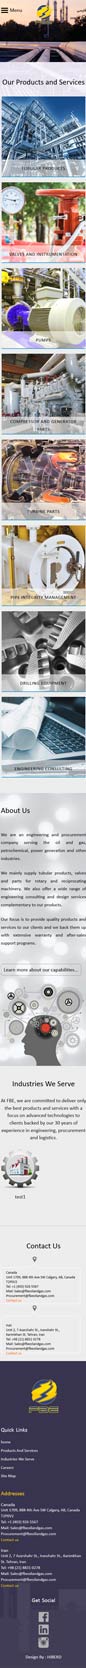 طراحی سایت شرکت فن آوران برق اطمینان، طراحی سایت ، طراحی وب سایت